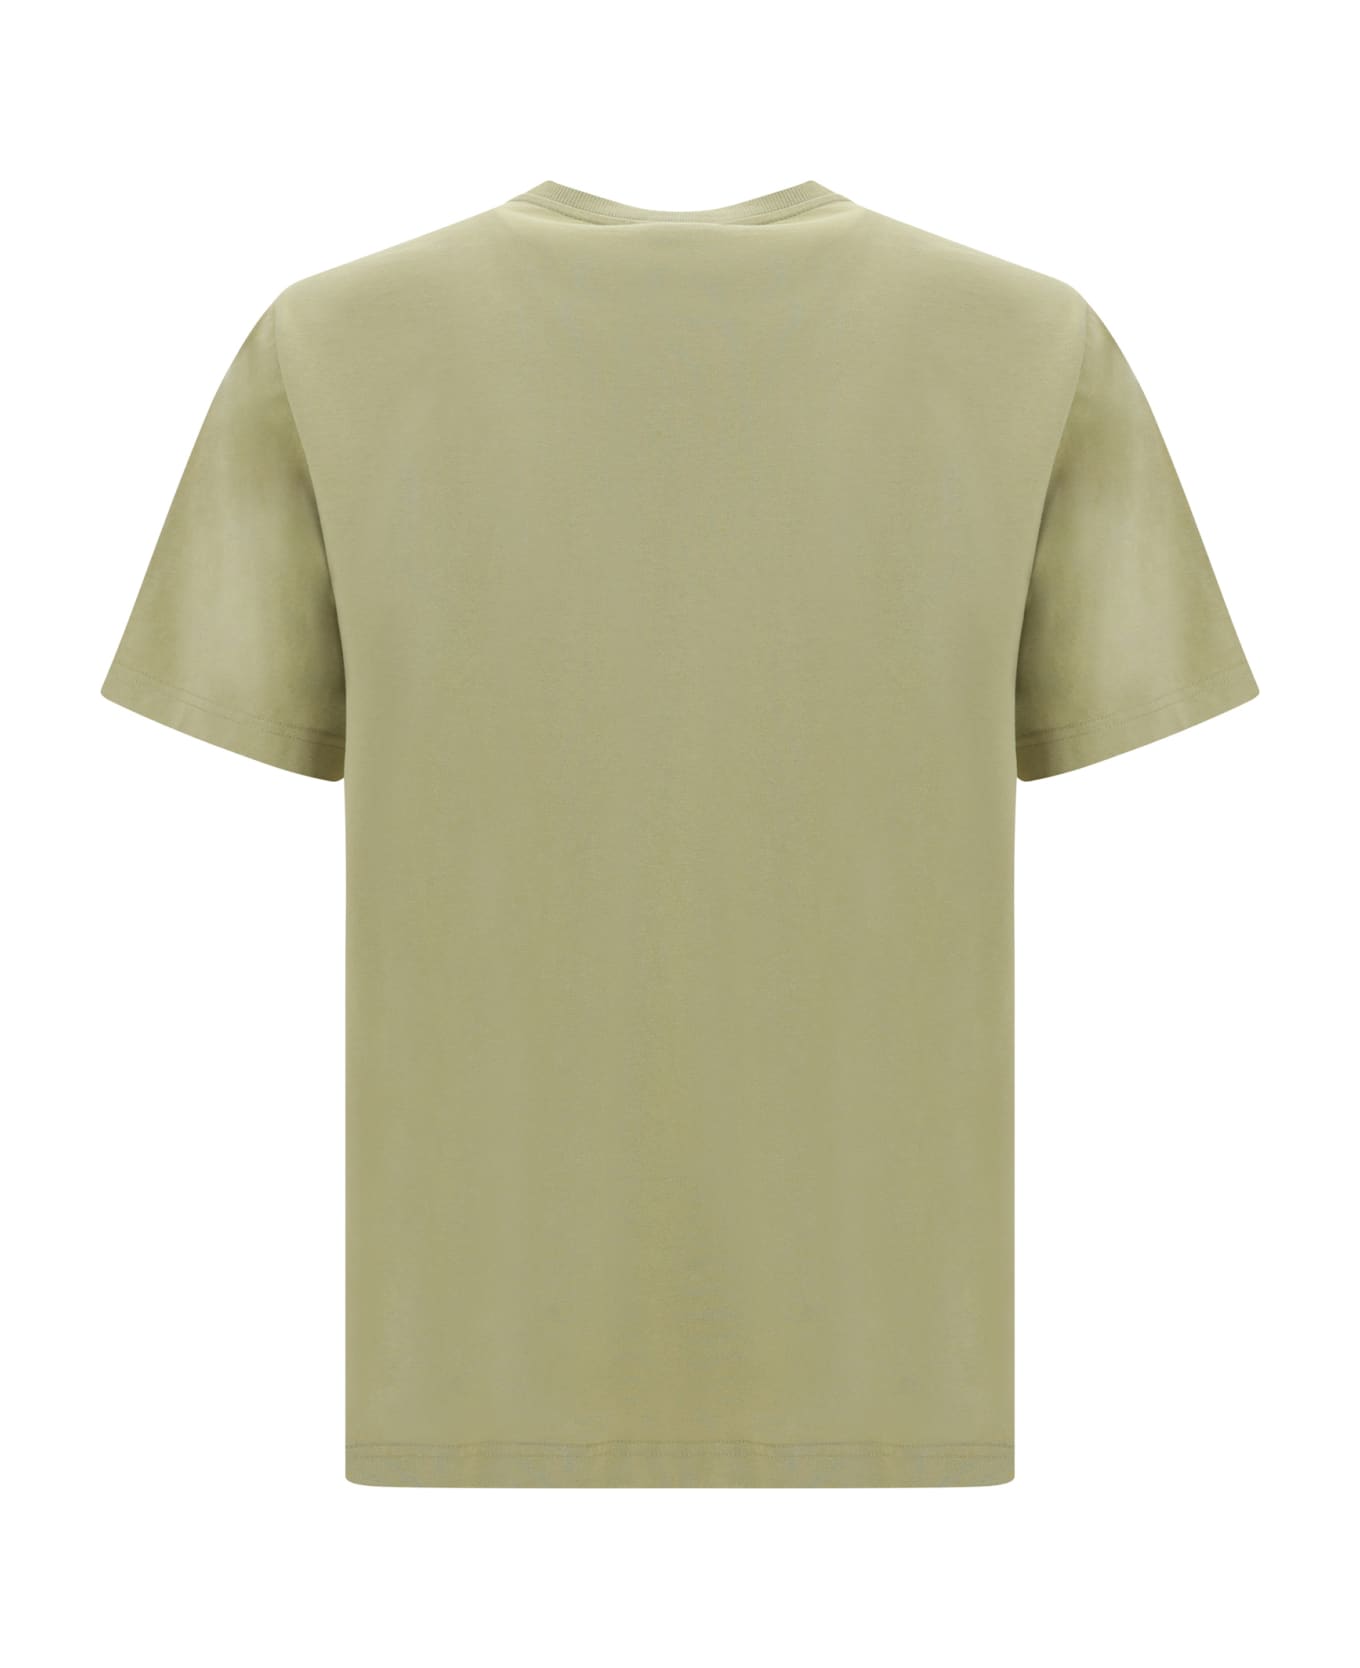 Maison Kitsuné T-shirt - Canvas シャツ